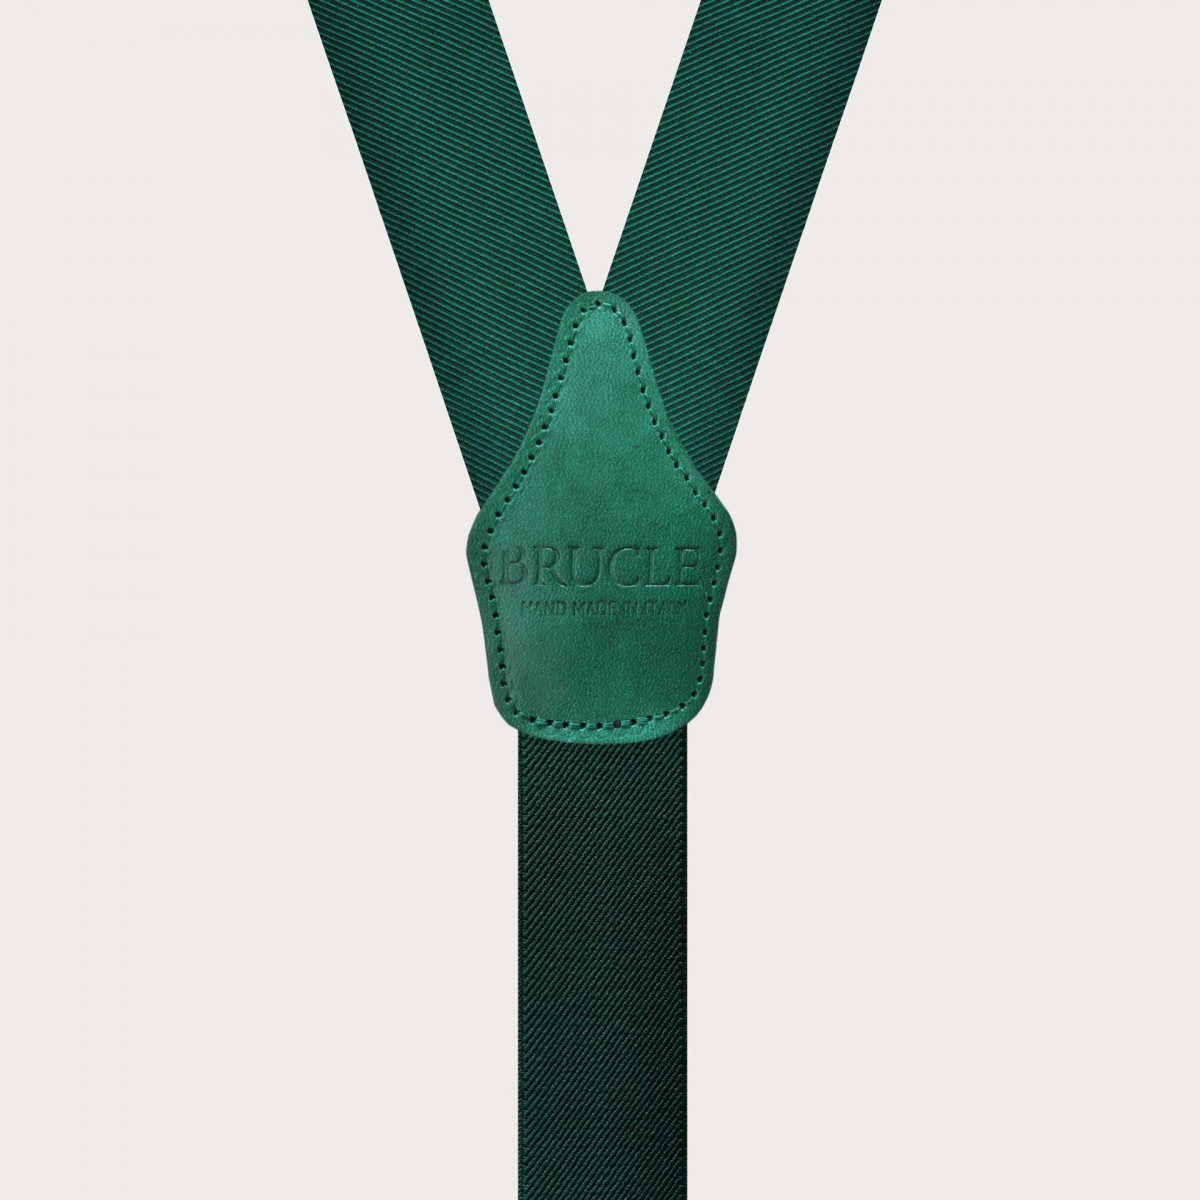 Exclusive Green Silk Suspenders